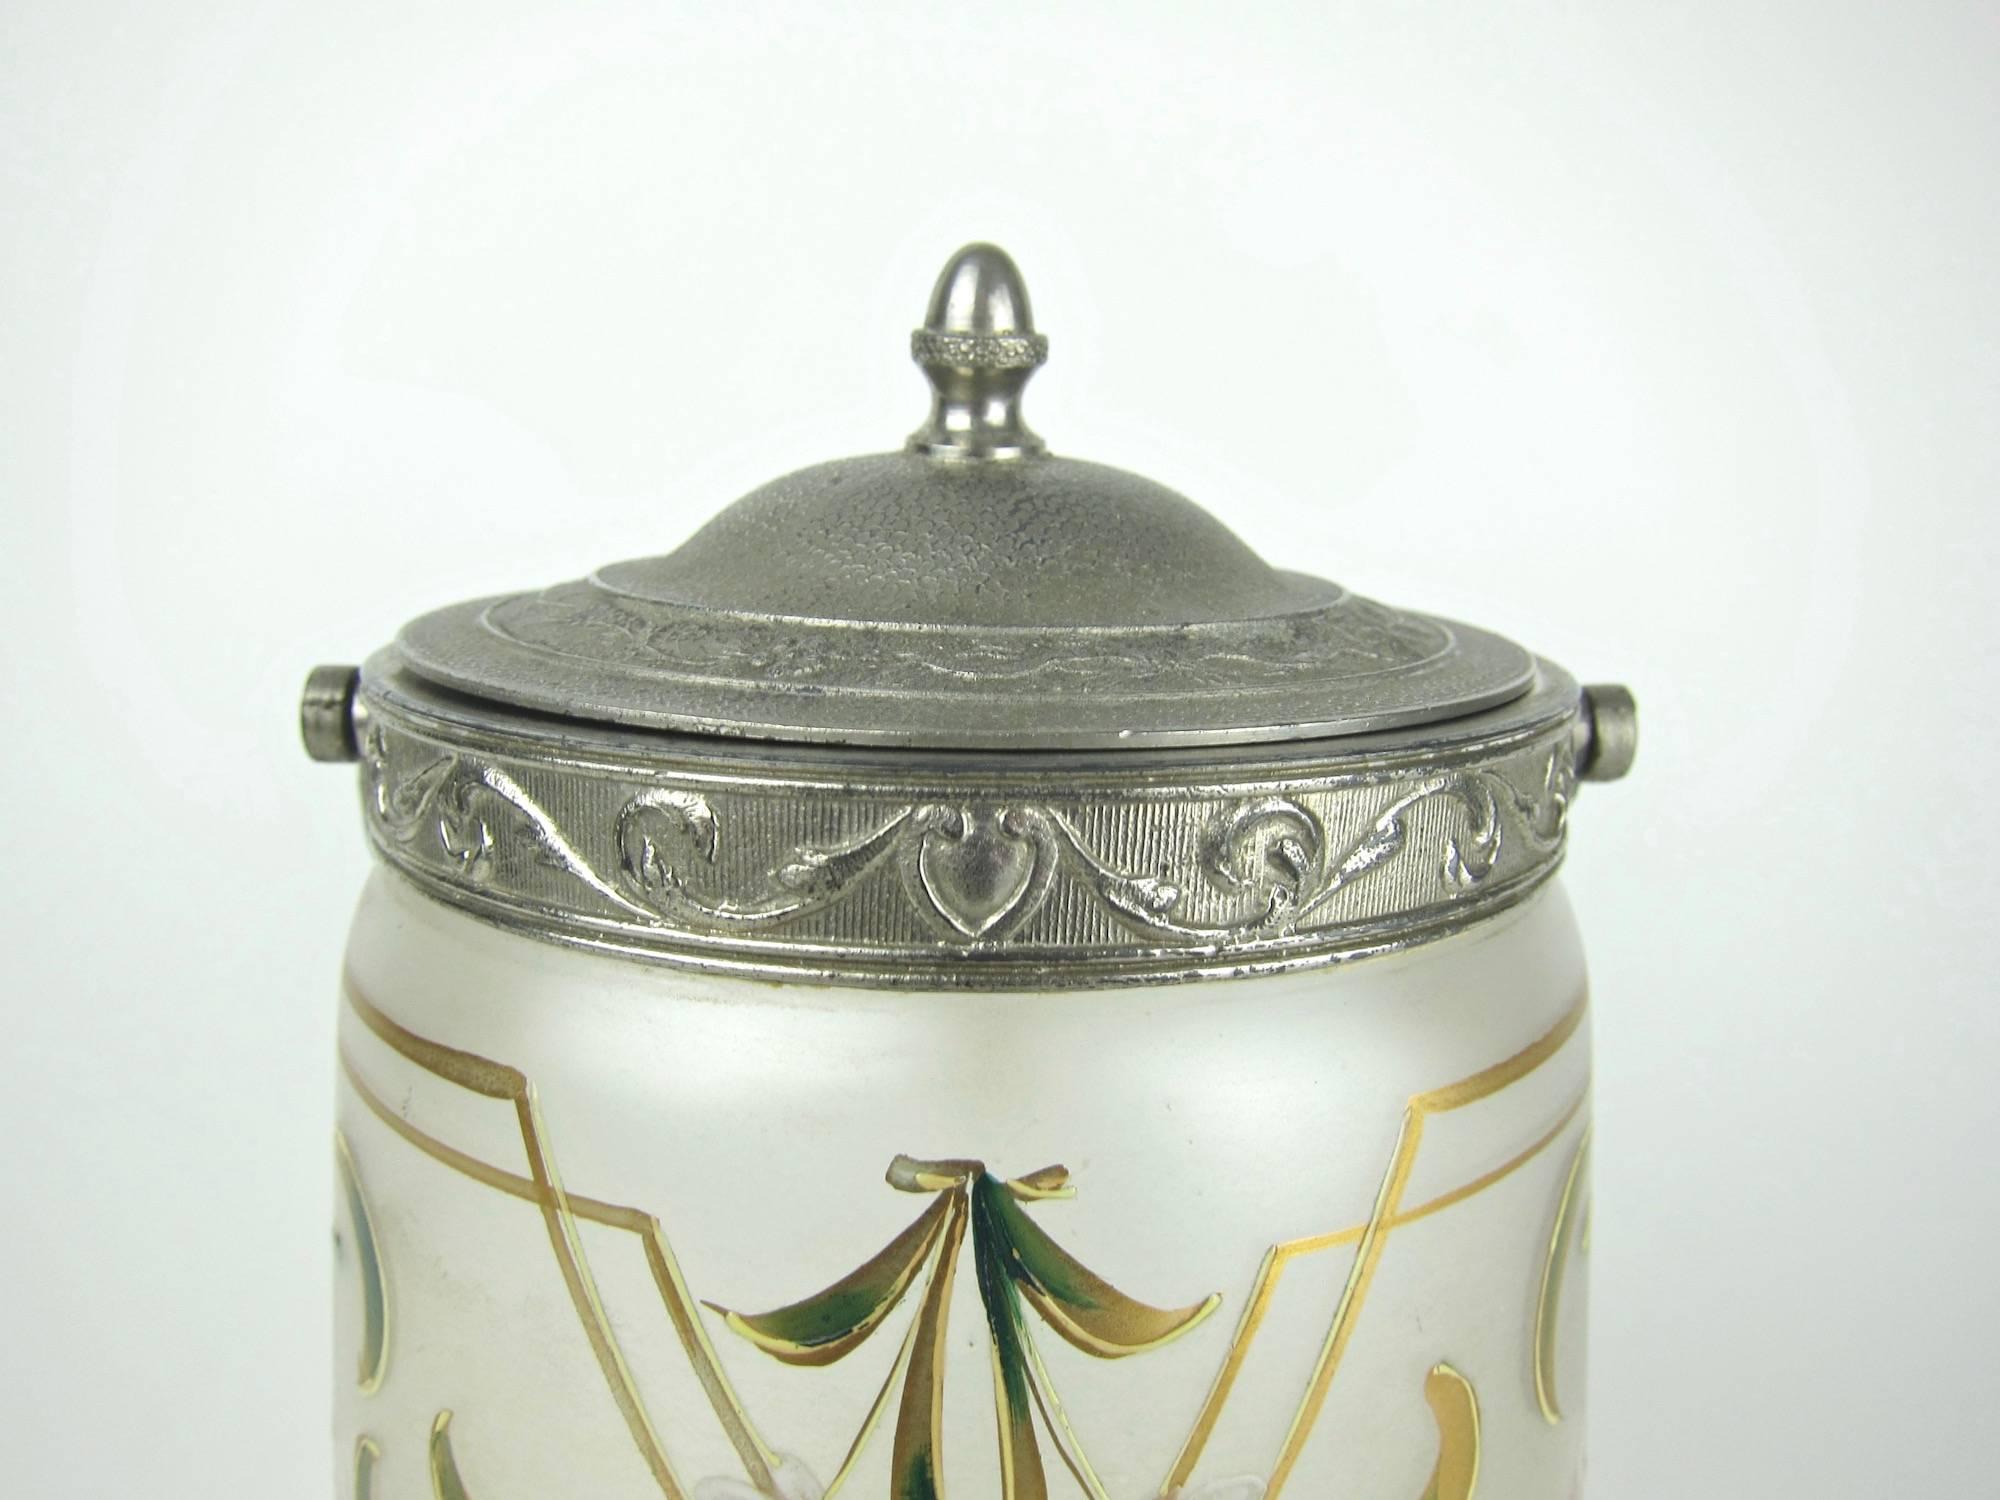 Enameled Antique Glass Biscuit Barrel / Cookie Jar with Art Nouveau Enamel Decoration